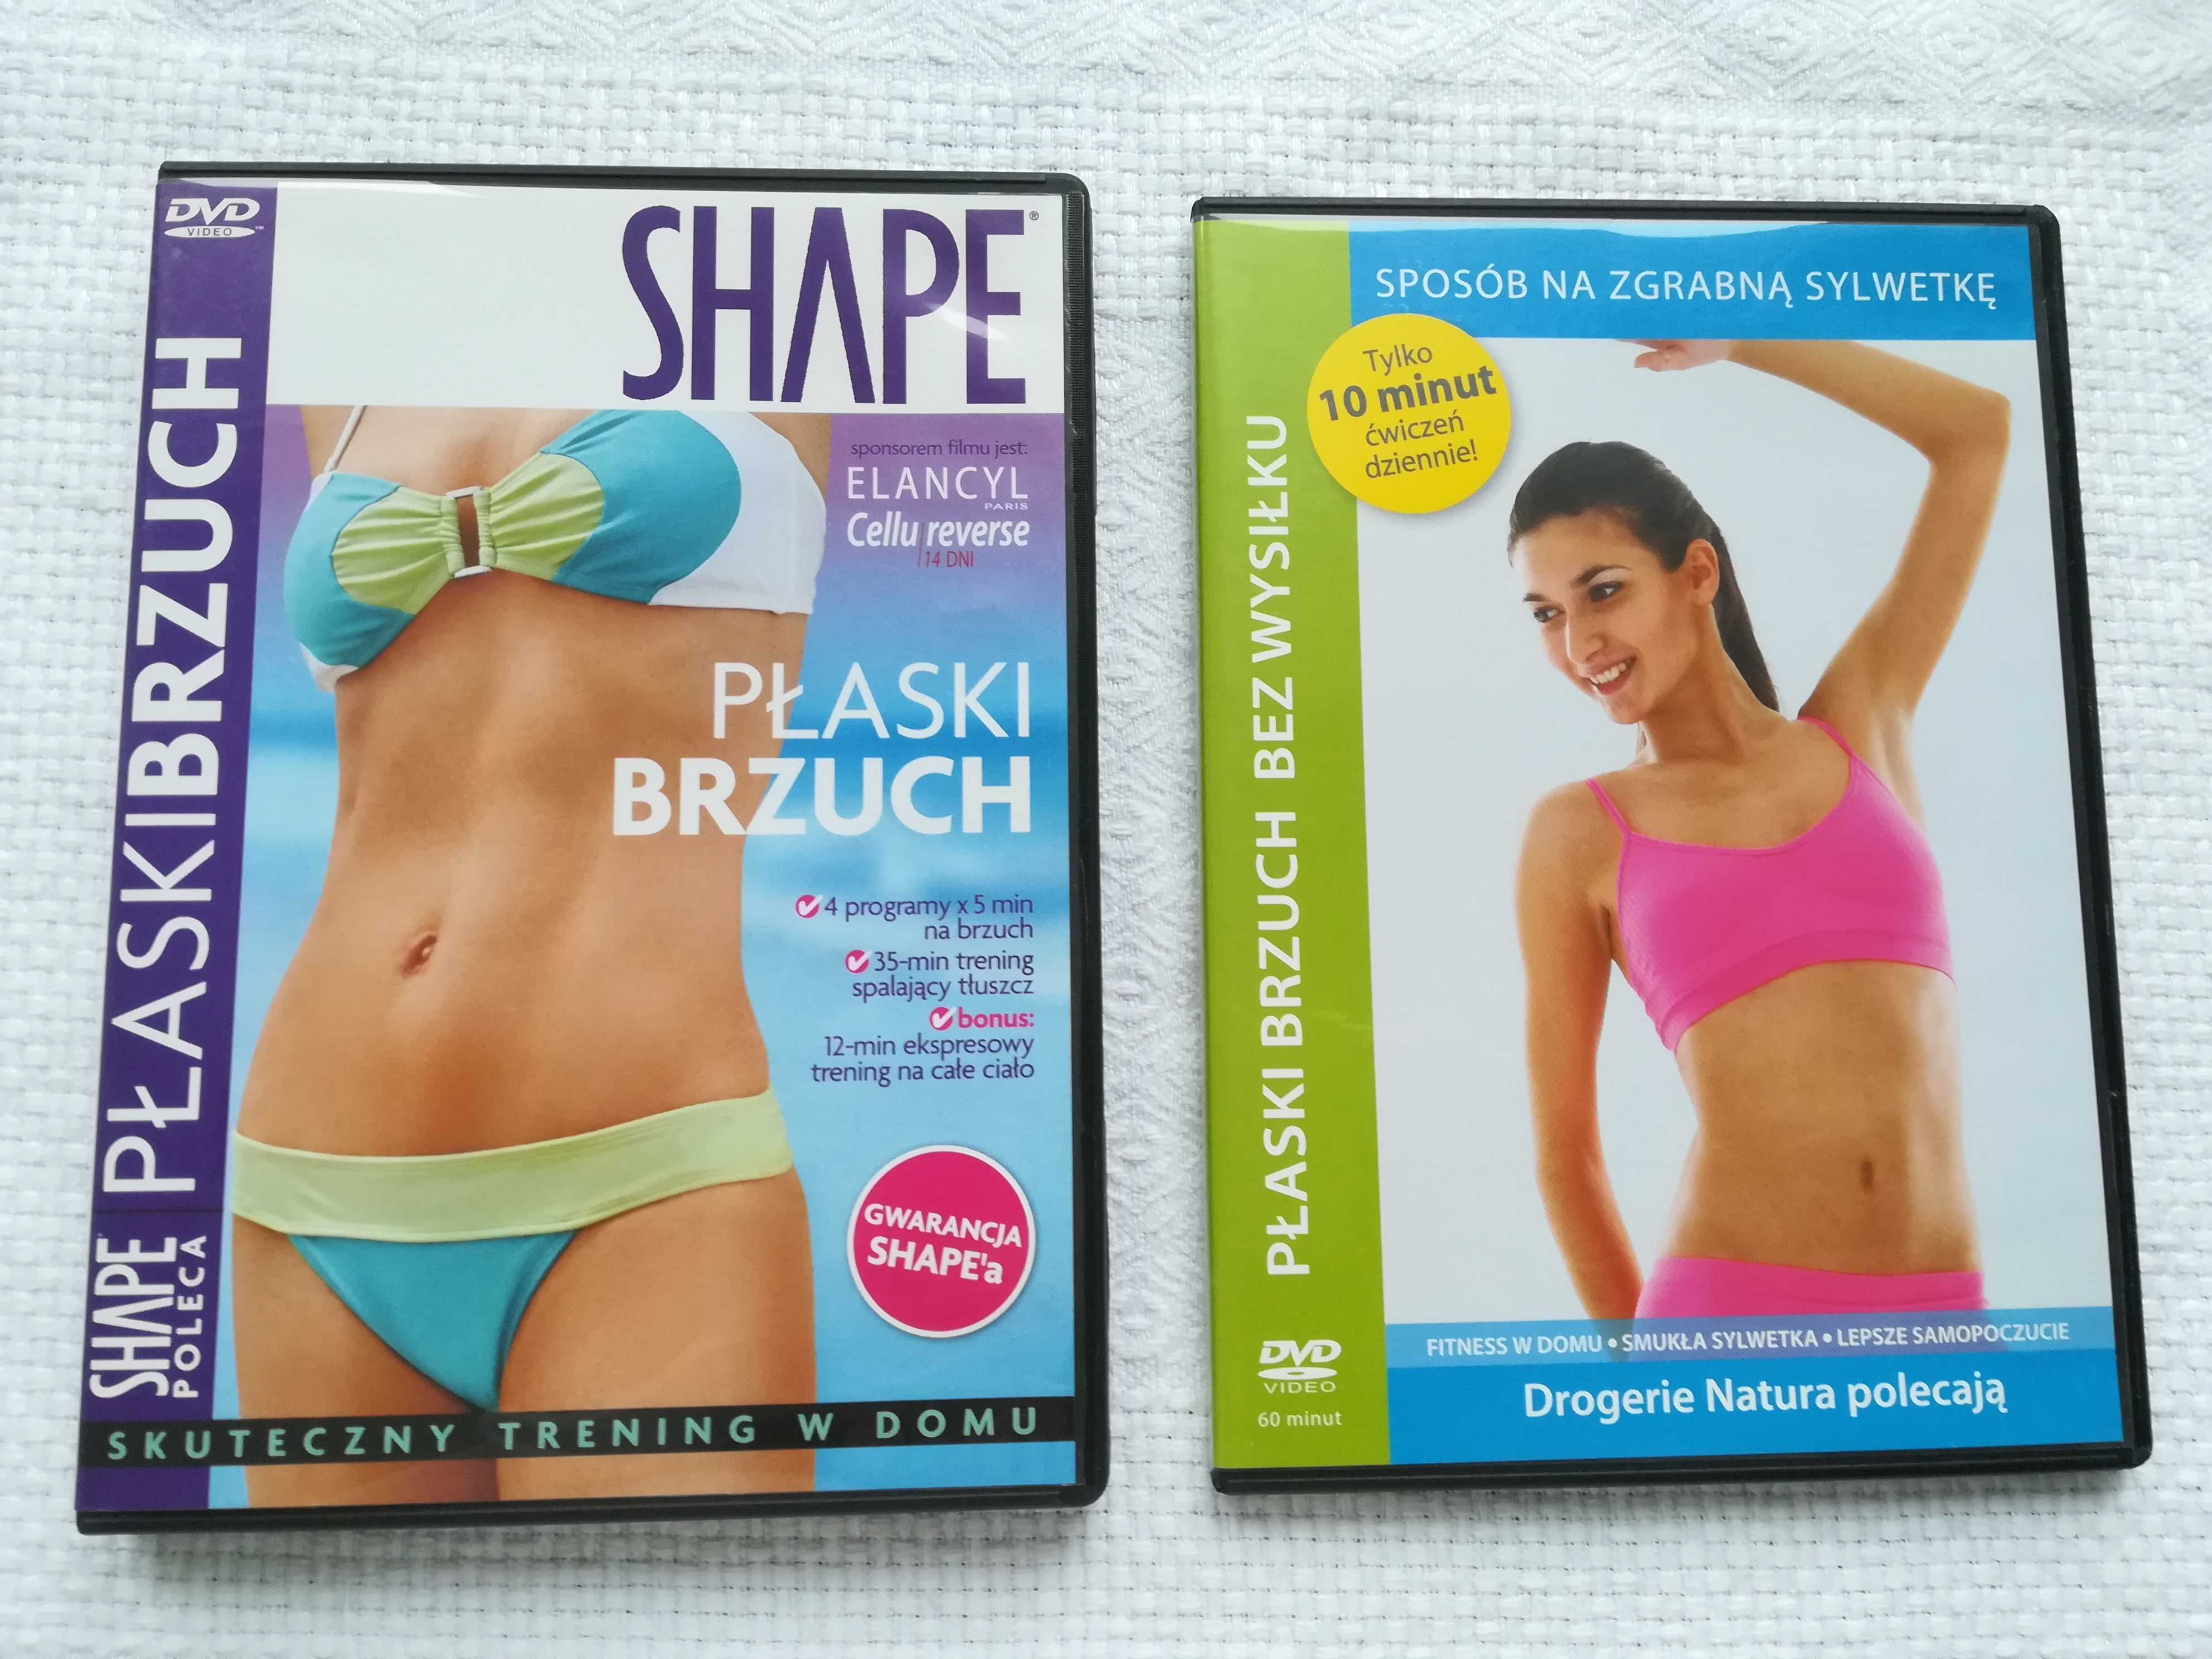 płyta dvd shape sport fitness, ćwiczenia płaski brzuch   na lato